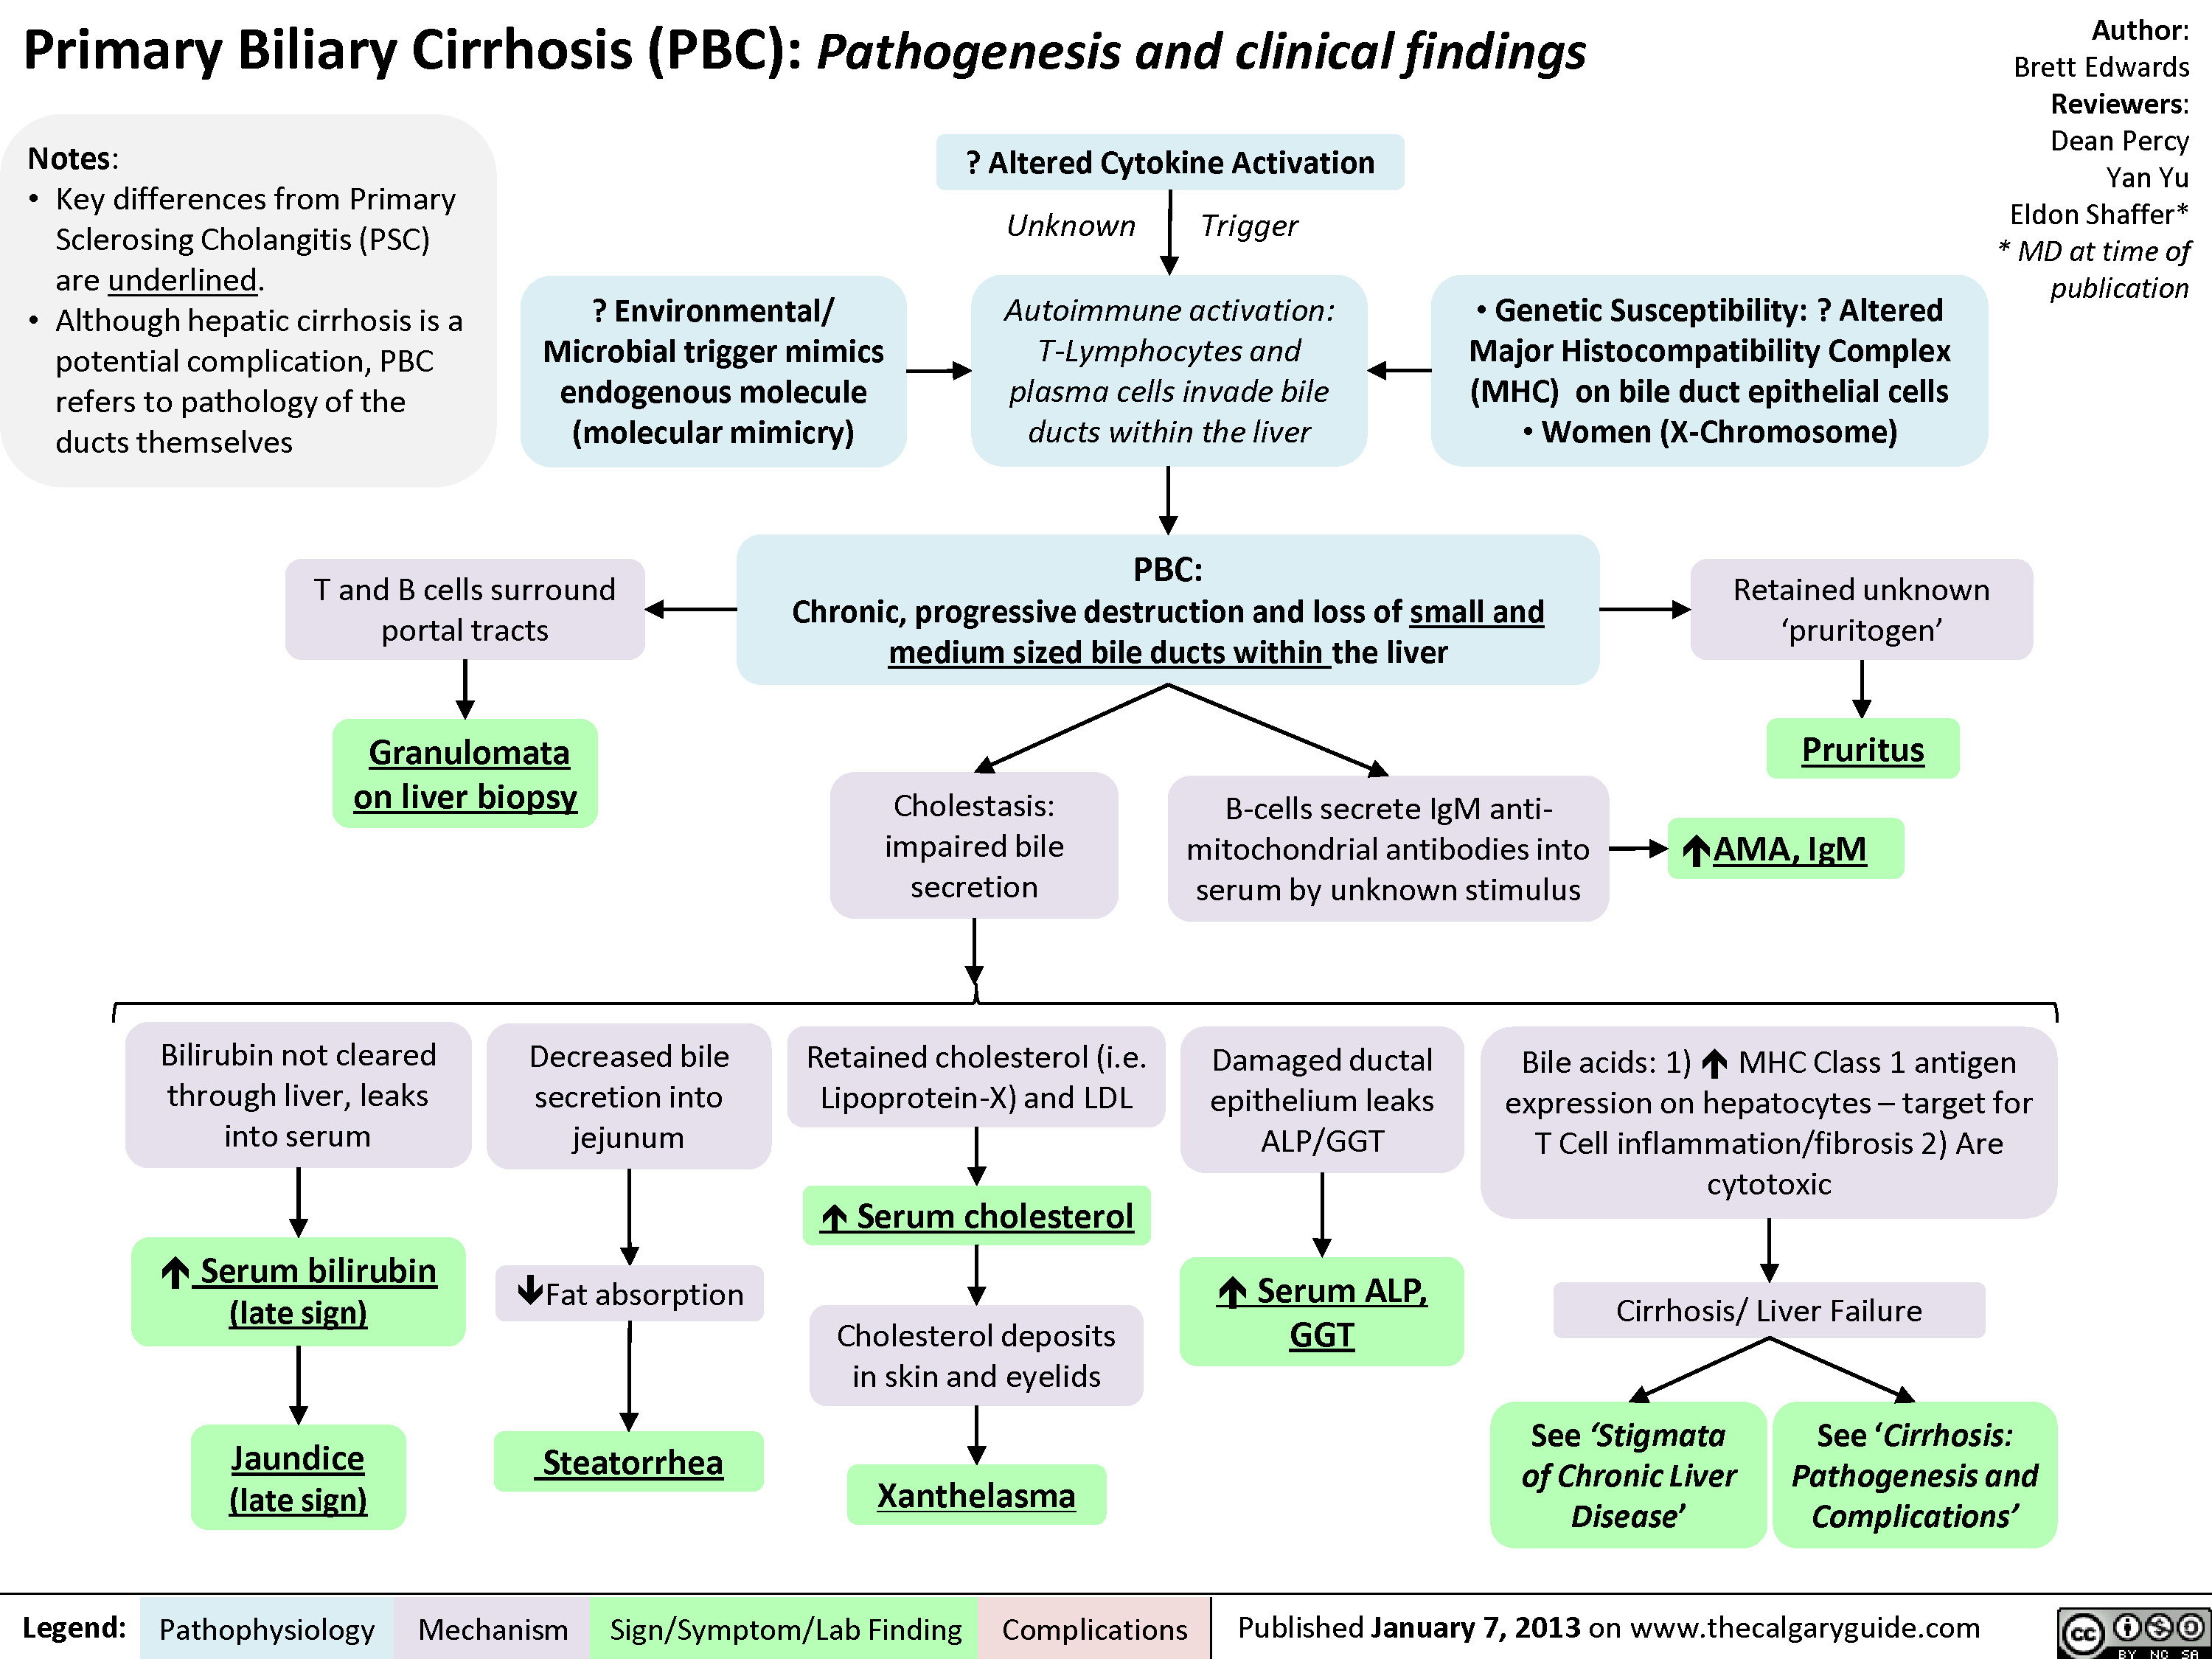 Primary Biliary Cirrhosis (PBC)